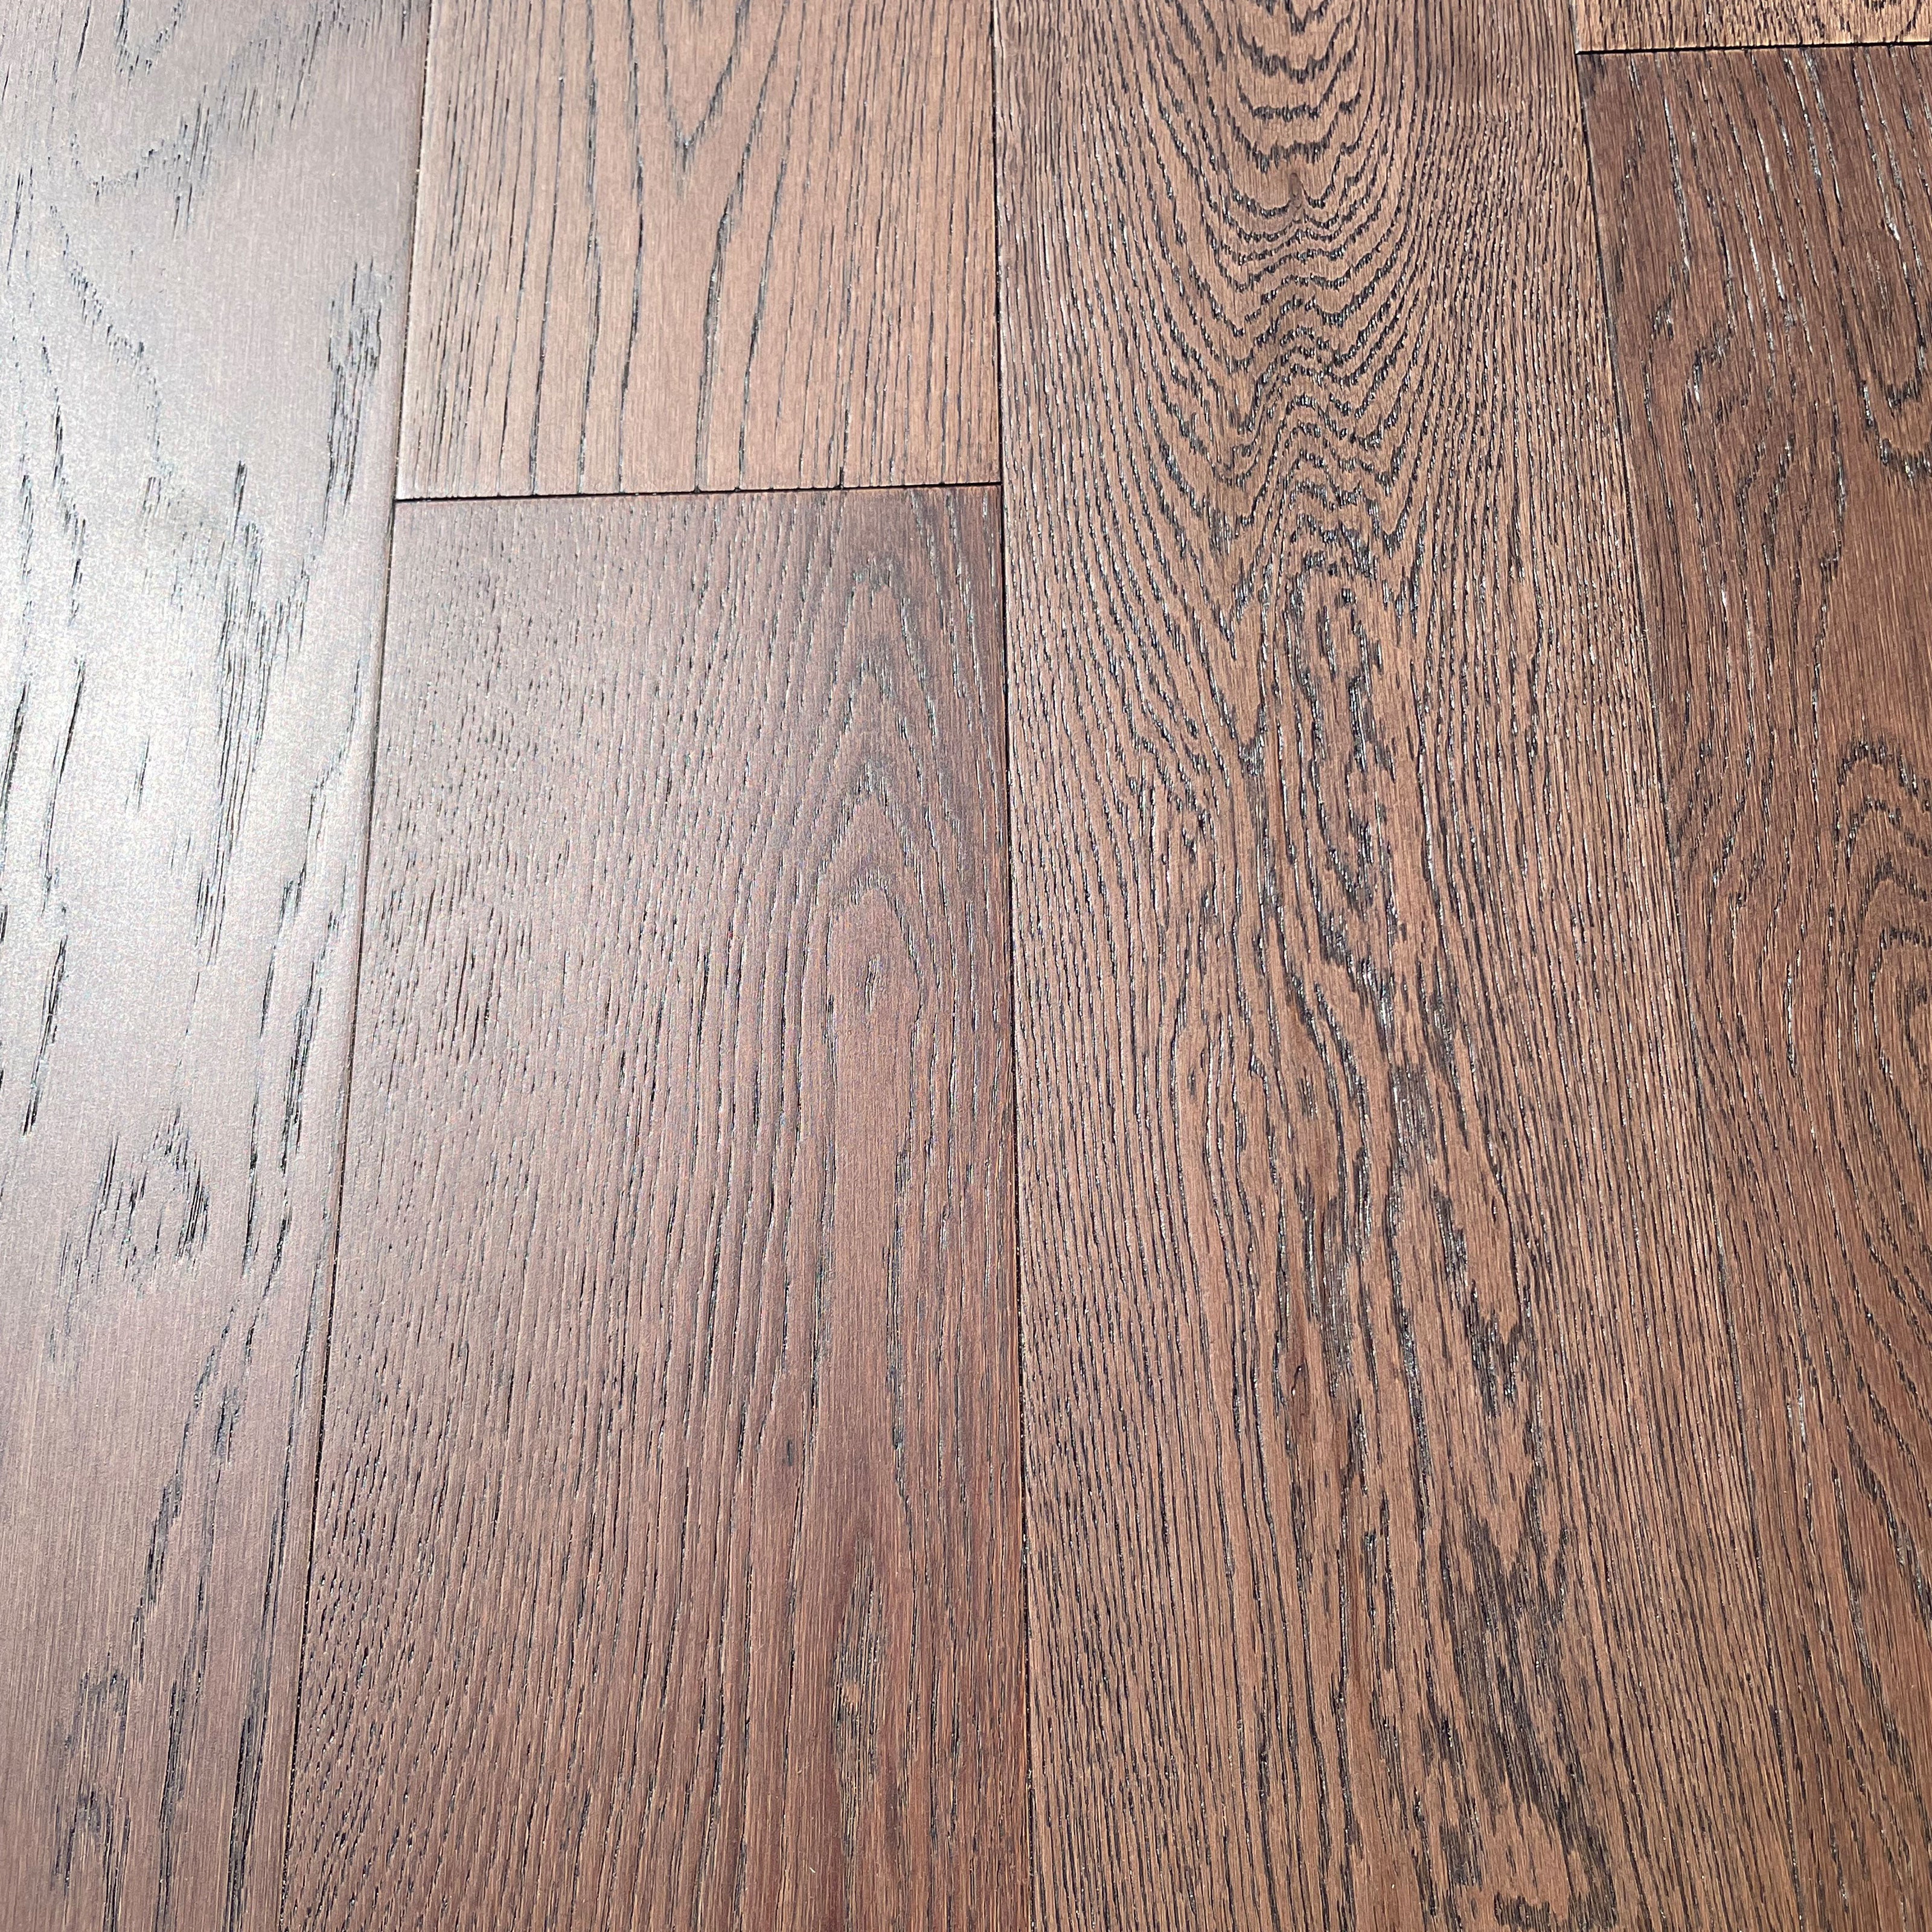 Pavimento in legno di rovere prefinito verniciato spazz. 10x125x900 linea PLANET mod. CAVES - Eternal Parquet